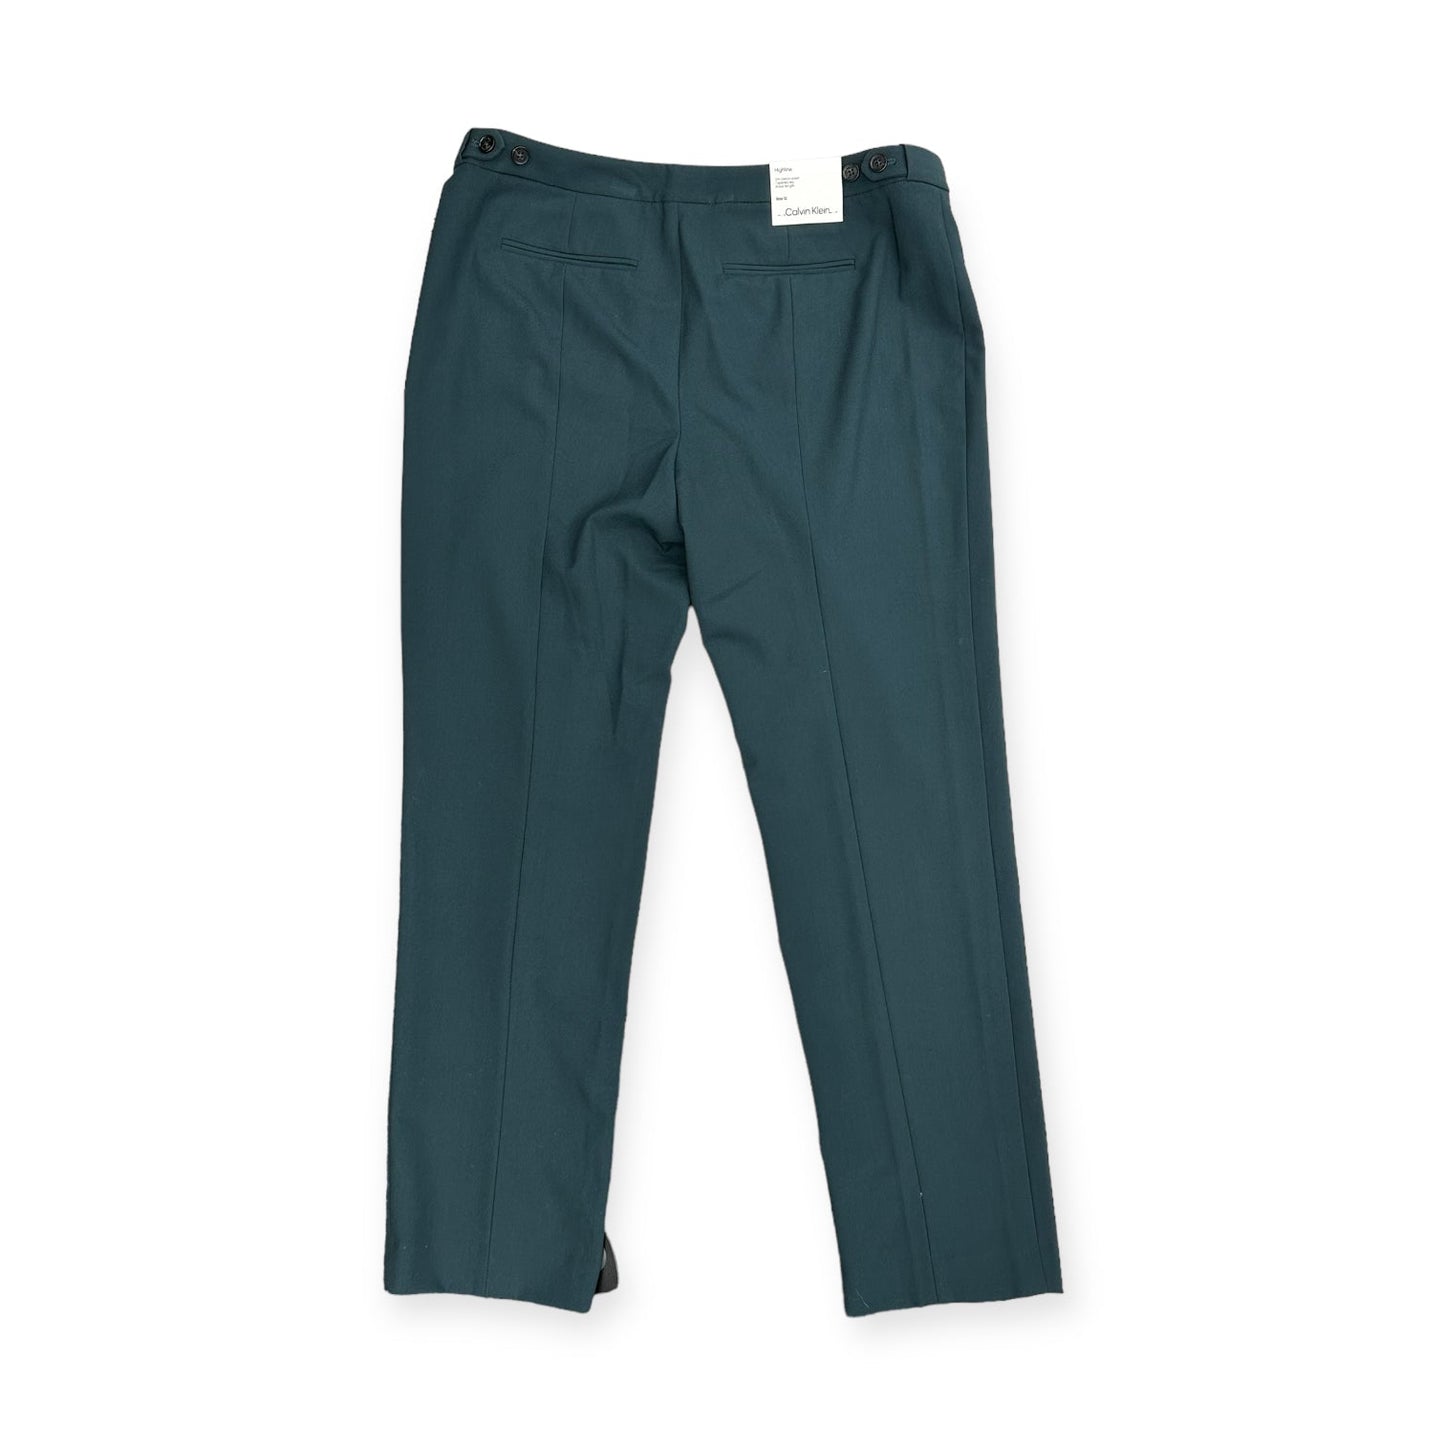 Green Pants Dress Calvin Klein, Size 12